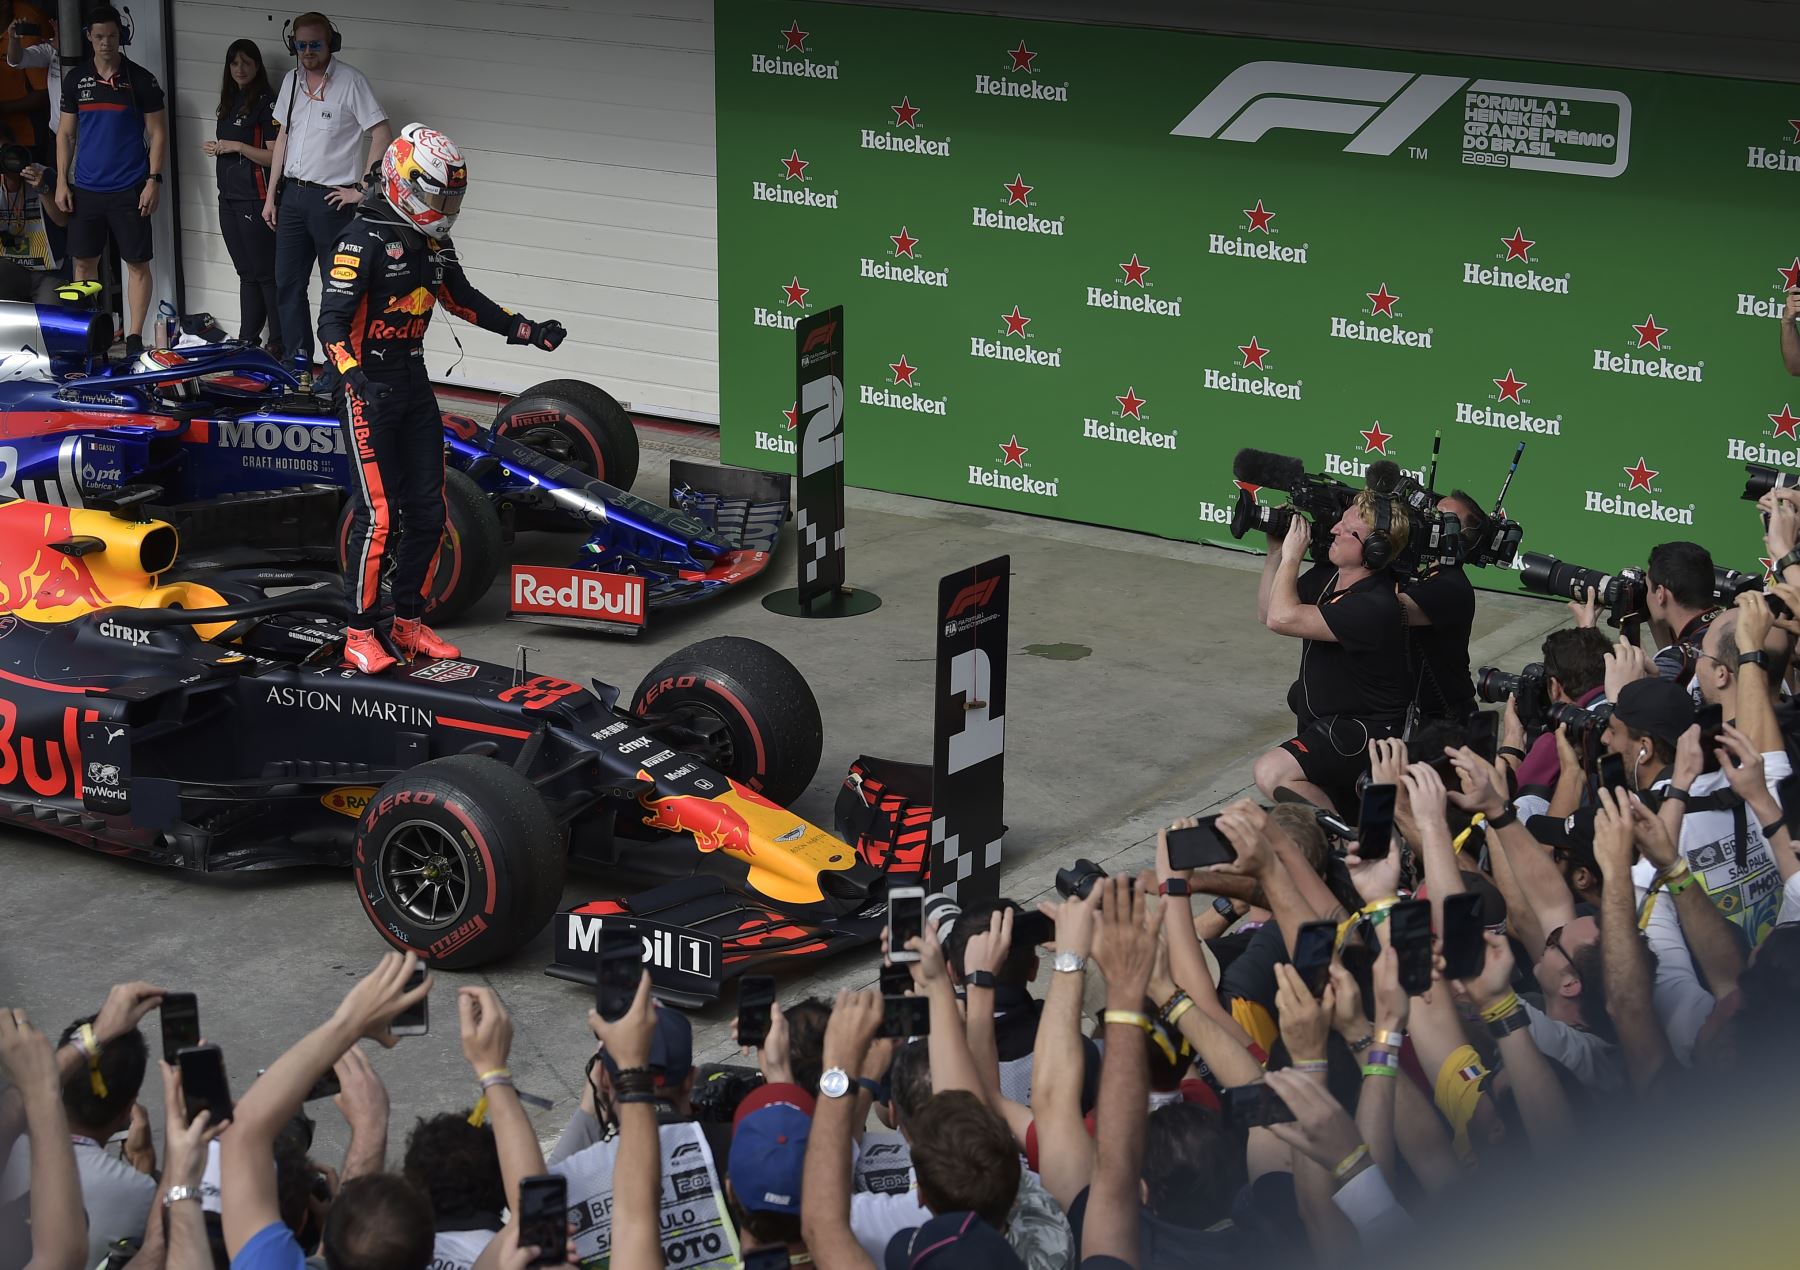 El piloto holandés de Red Bull, Max Verstappen, celebra tras ganar el Gran Premio de F1 Brasil, en el hipódromo de Interlagos en Sao Paulo.
Foto: AFP